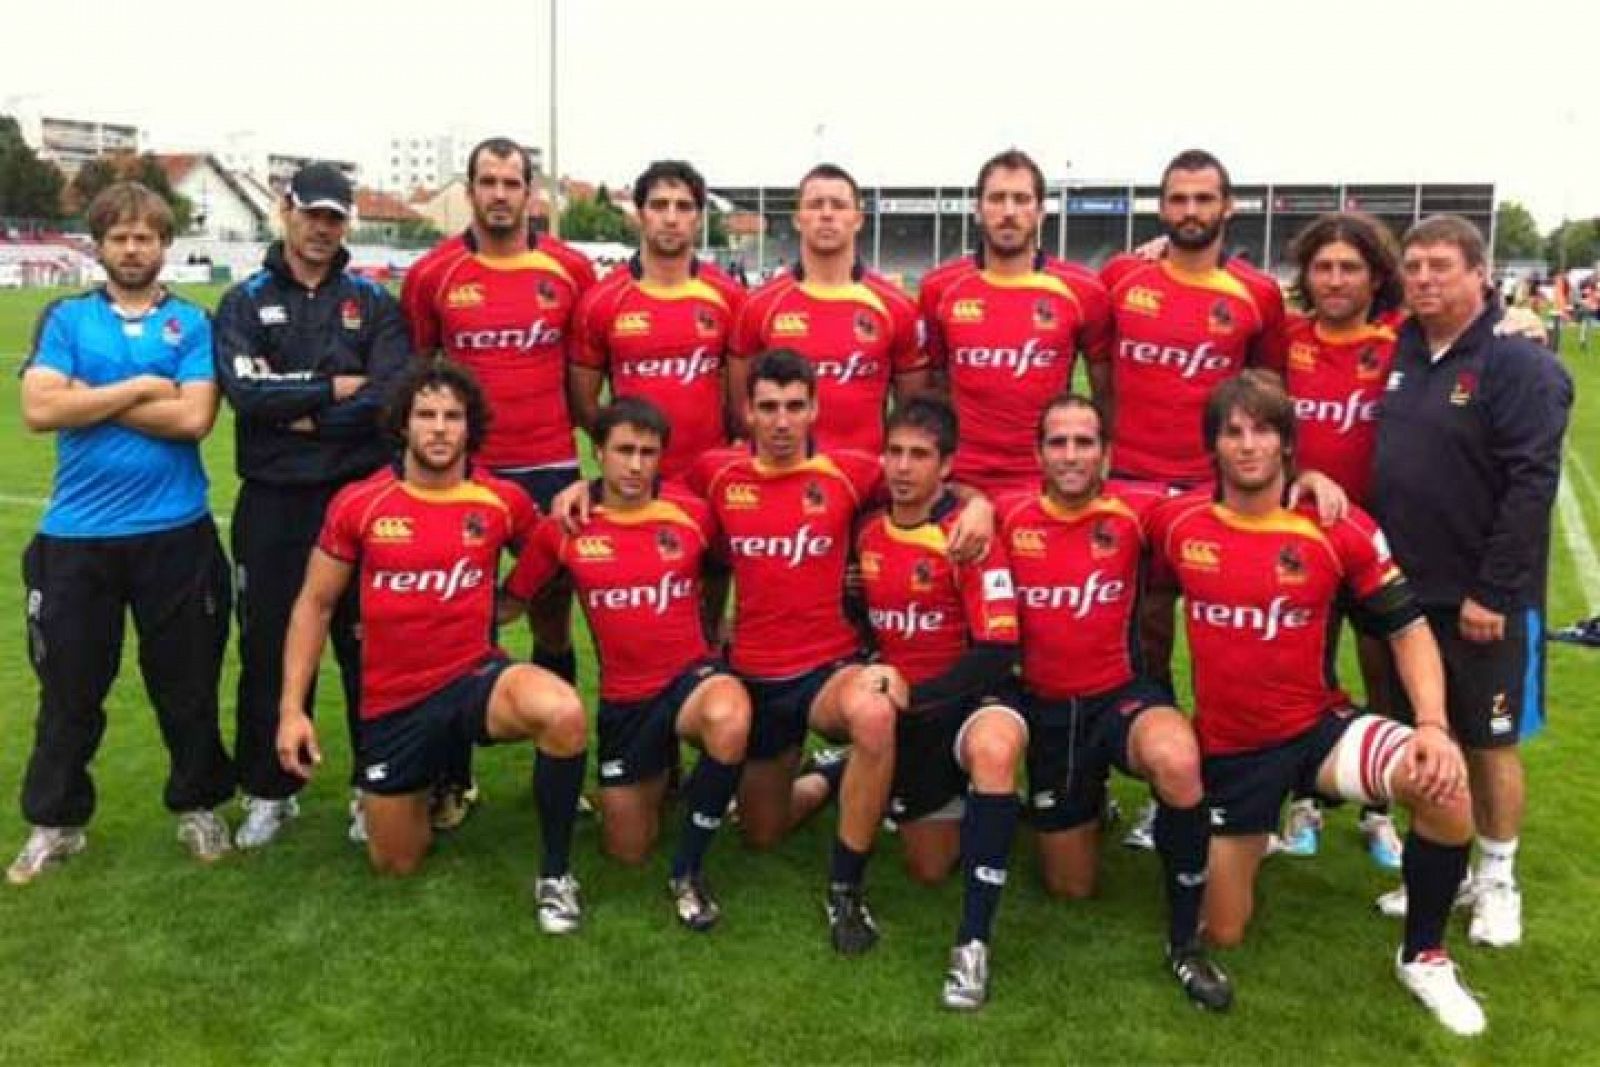 La selección española consigue un merecido bronce en el torneo Europeo de Rugby a siete